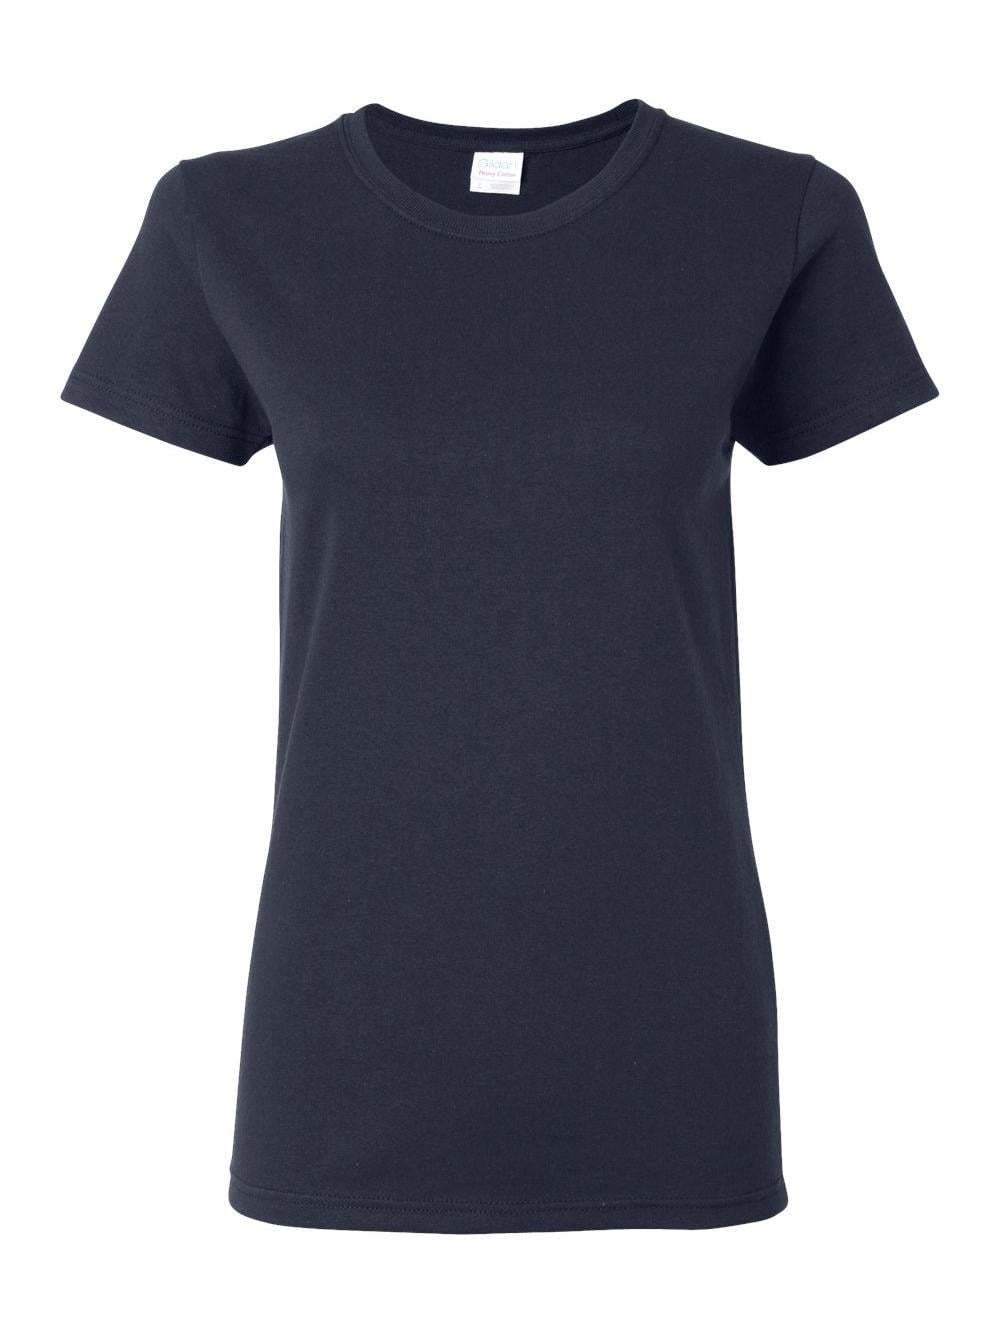 Gildan T-Shirts Heavy Cotton Women's Short Sleeve T-Shirt - Walmart.com